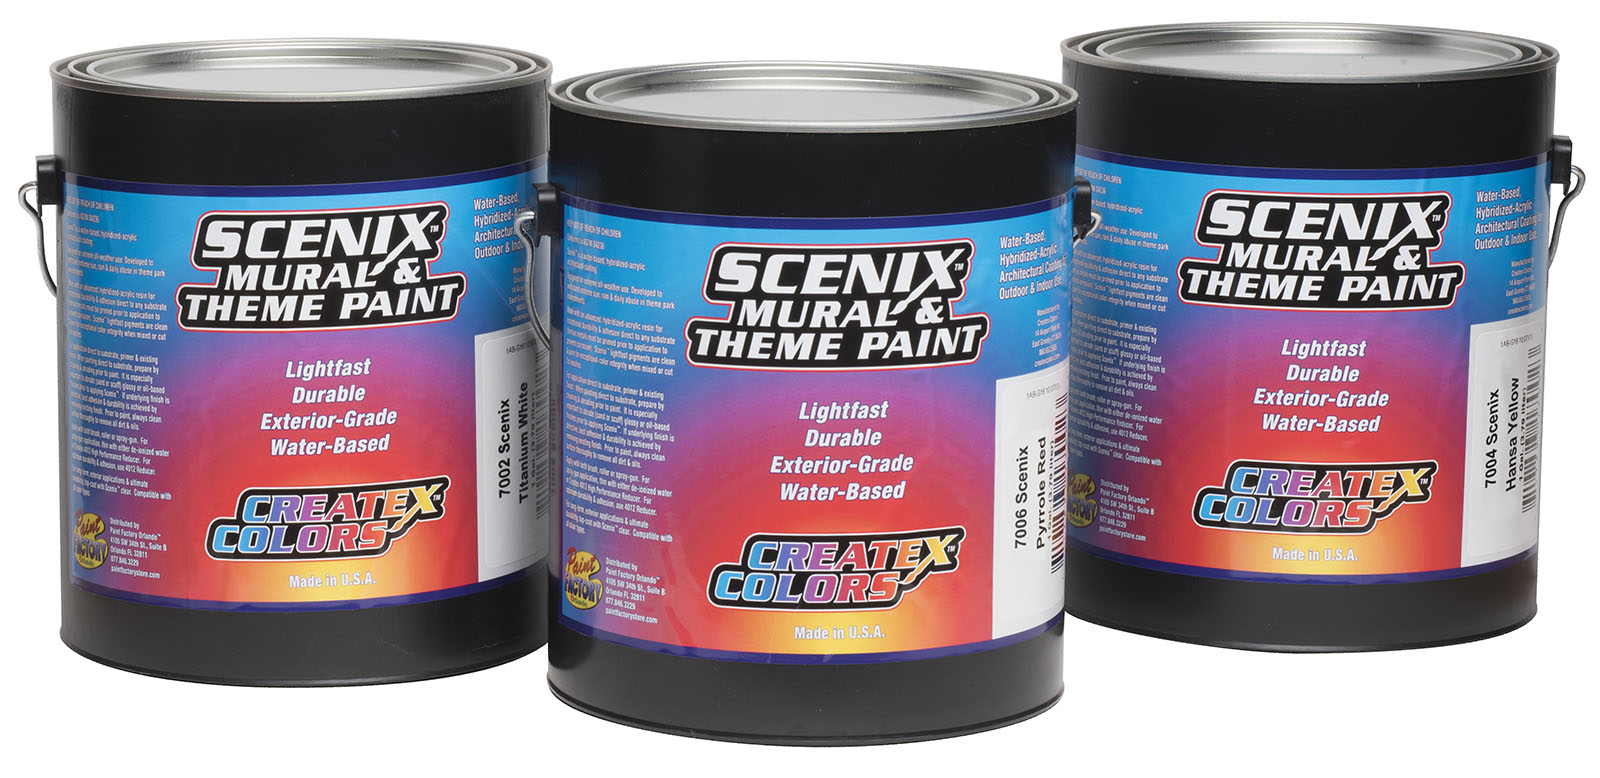 Createx Scenix Mural & Theme Paint: Resistent gegen Sonne, Regen und Lösemittel